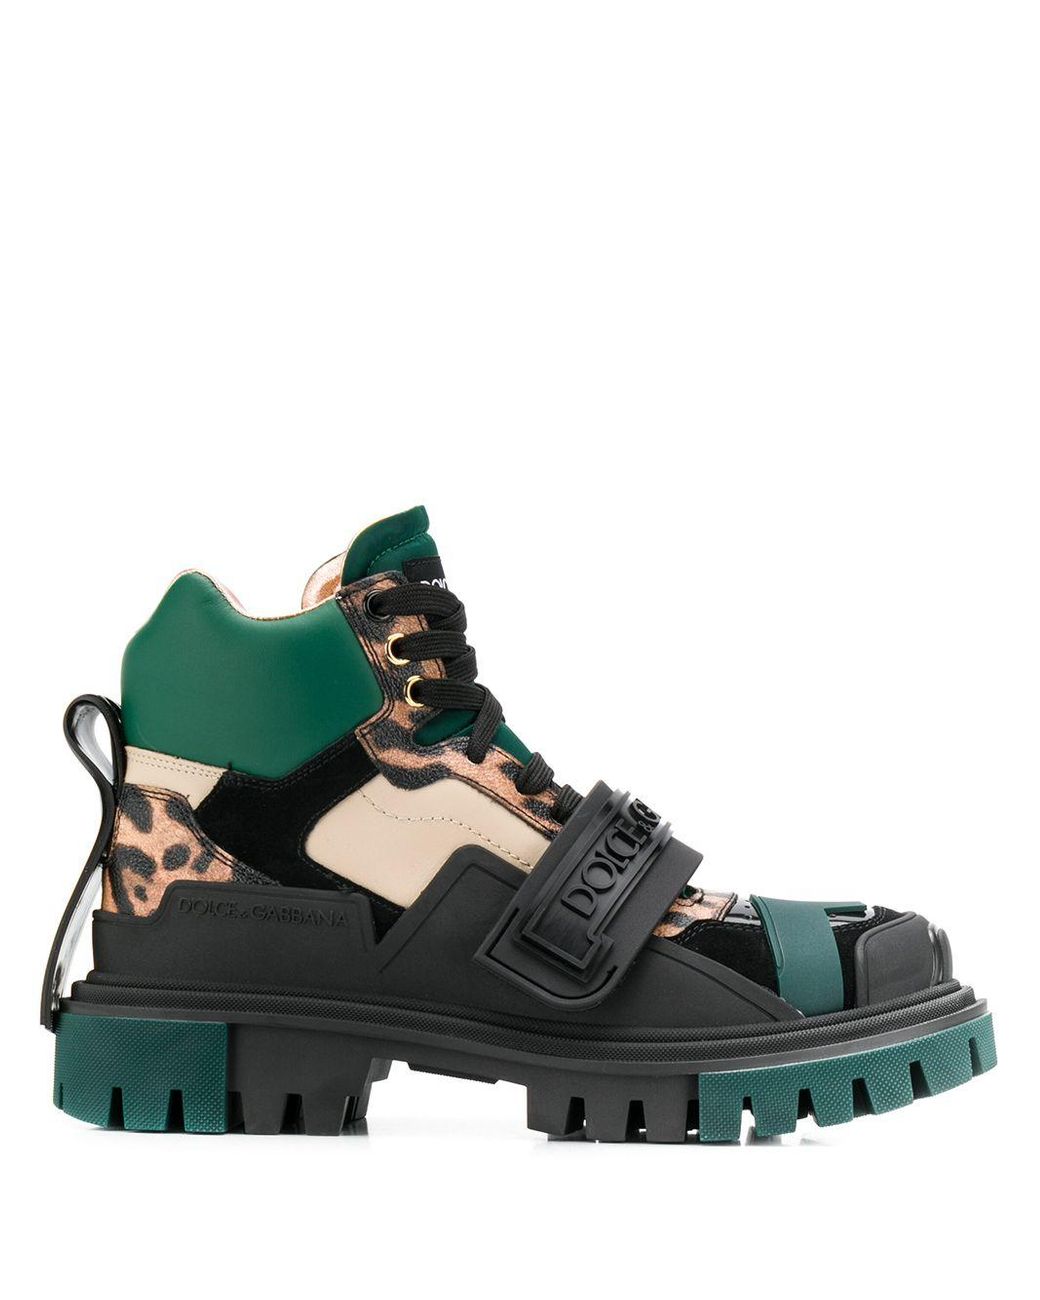 Dolce & Gabbana Trekking Logo Strap Boots in Black | Lyst